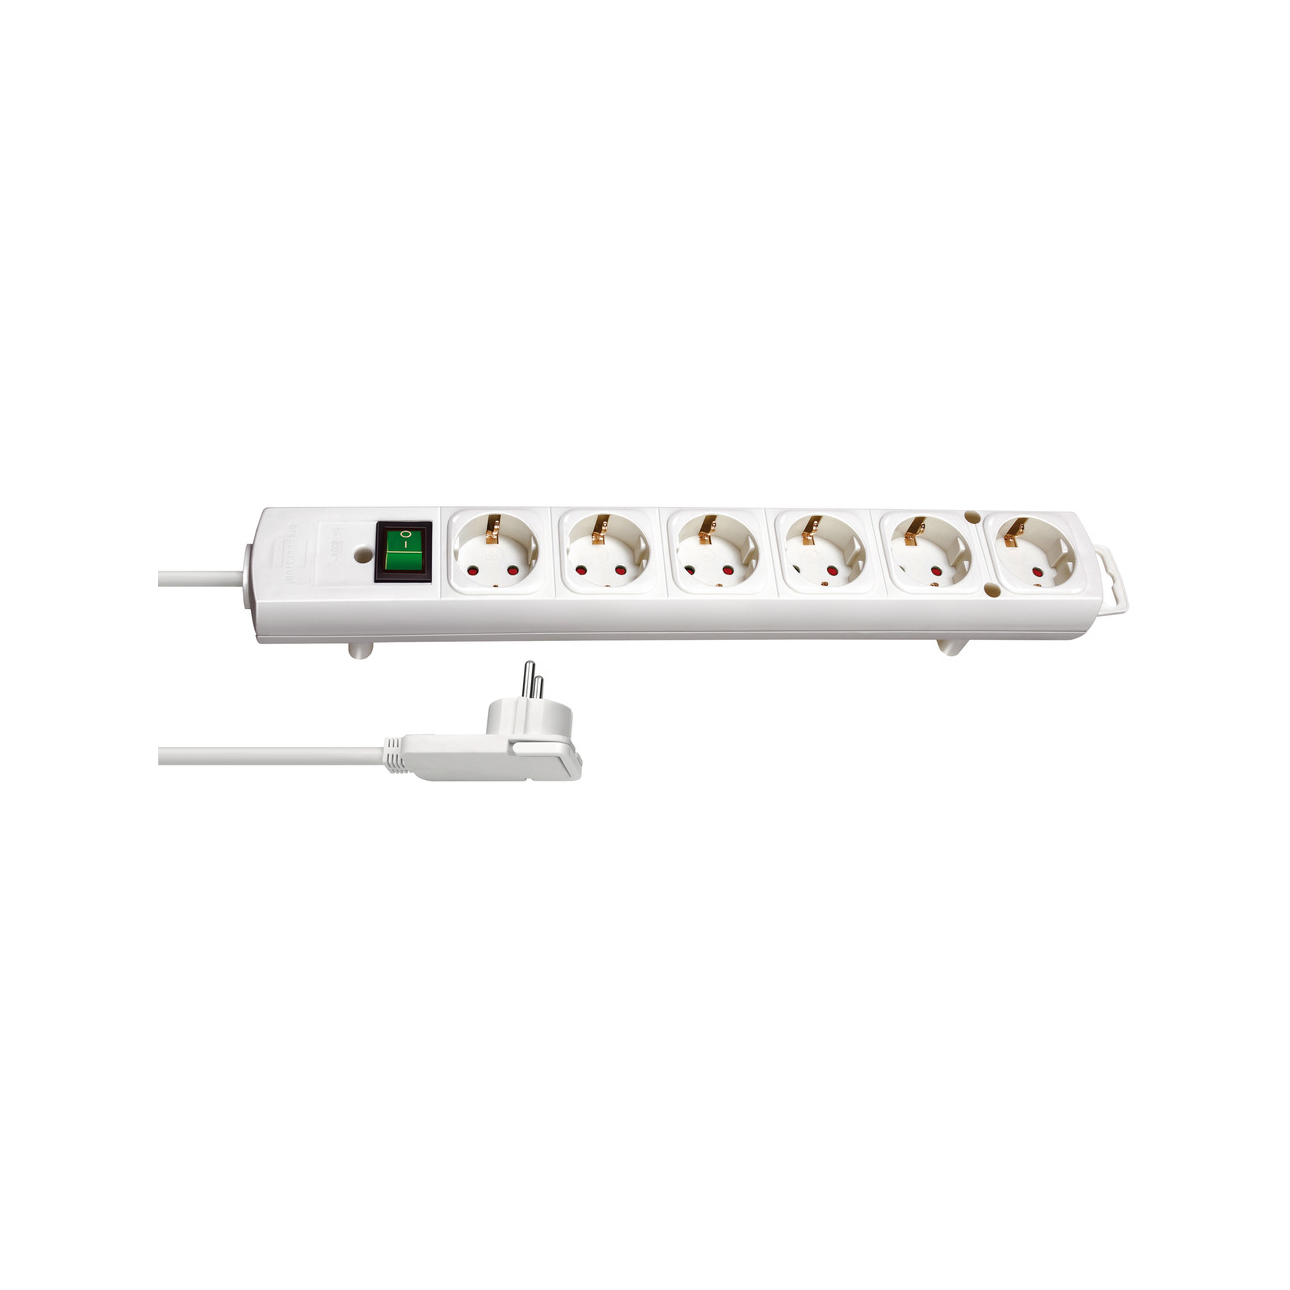 Удлинитель Brennenstuhl Comfort-Line 6 розеток кабель 2 м белый H05VV-F 3G1,5 1153320100